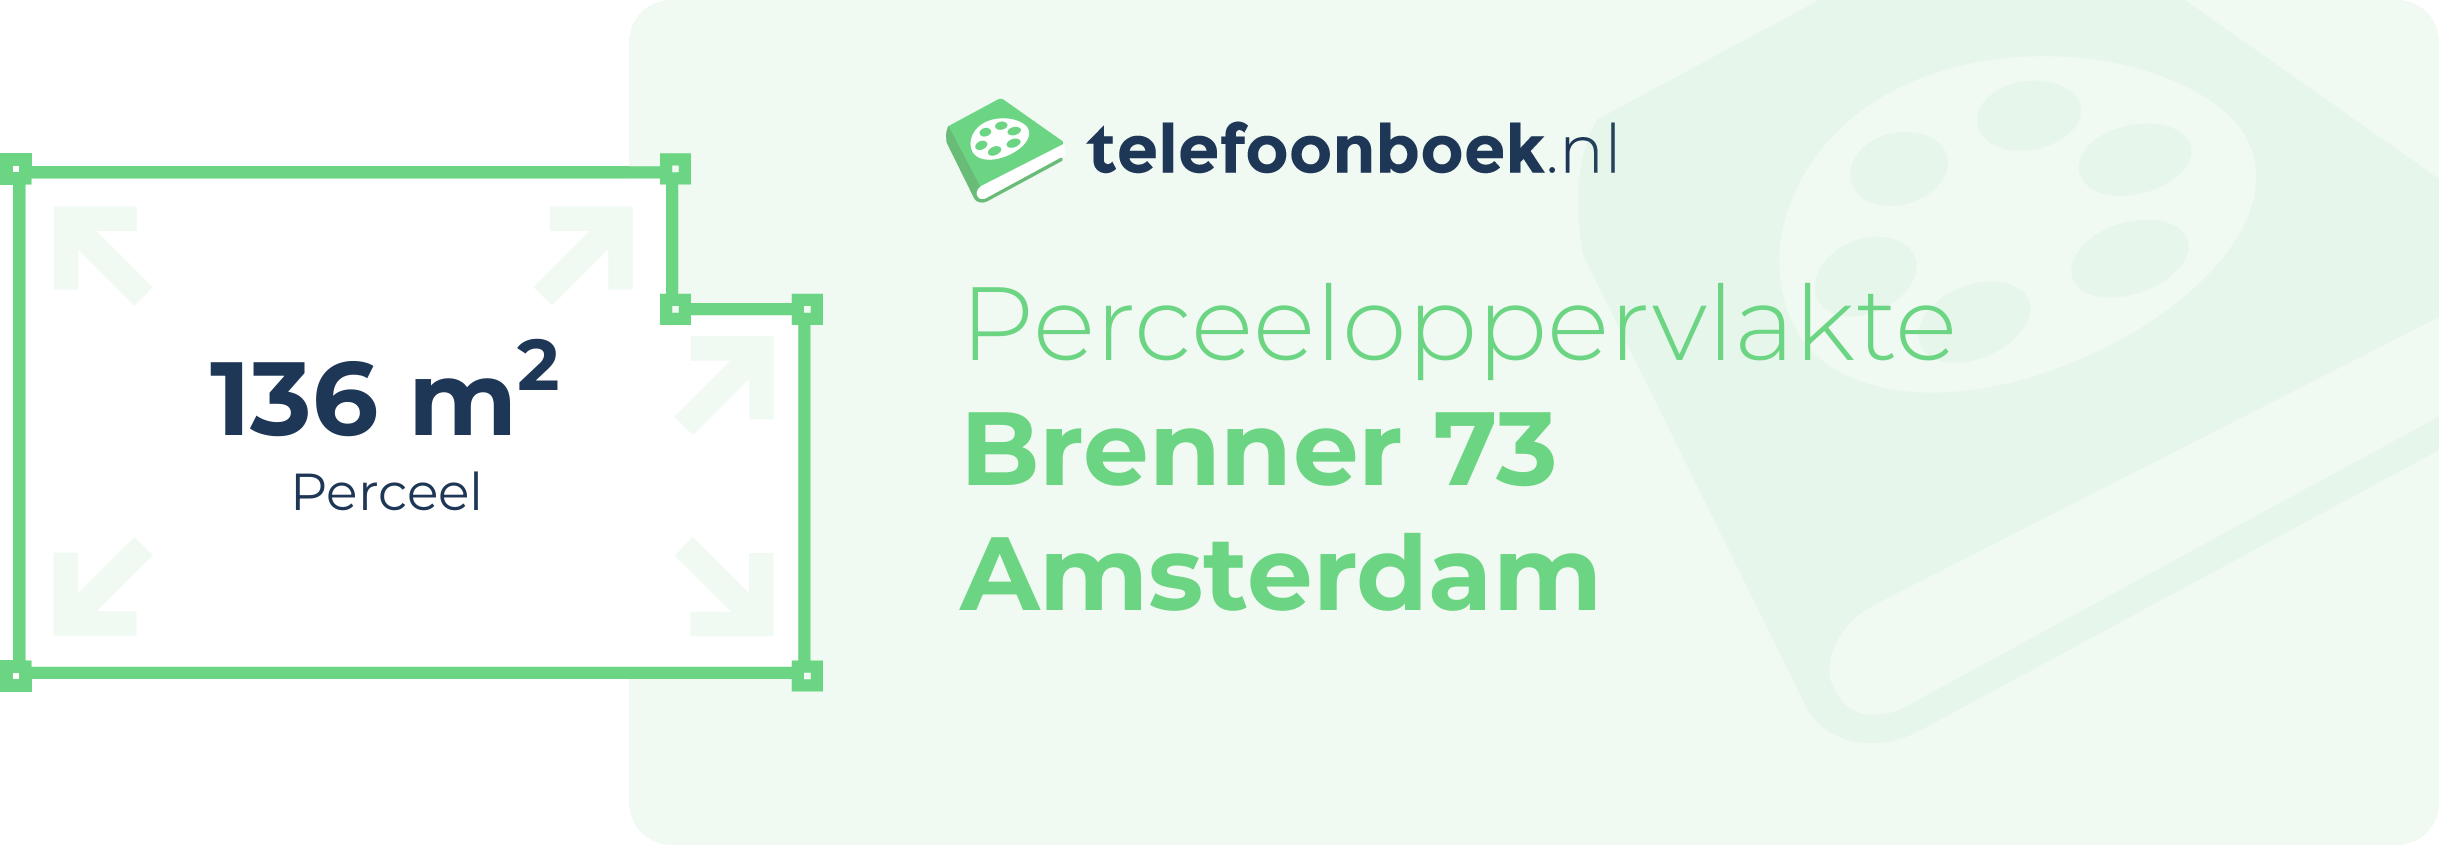 Perceeloppervlakte Brenner 73 Amsterdam